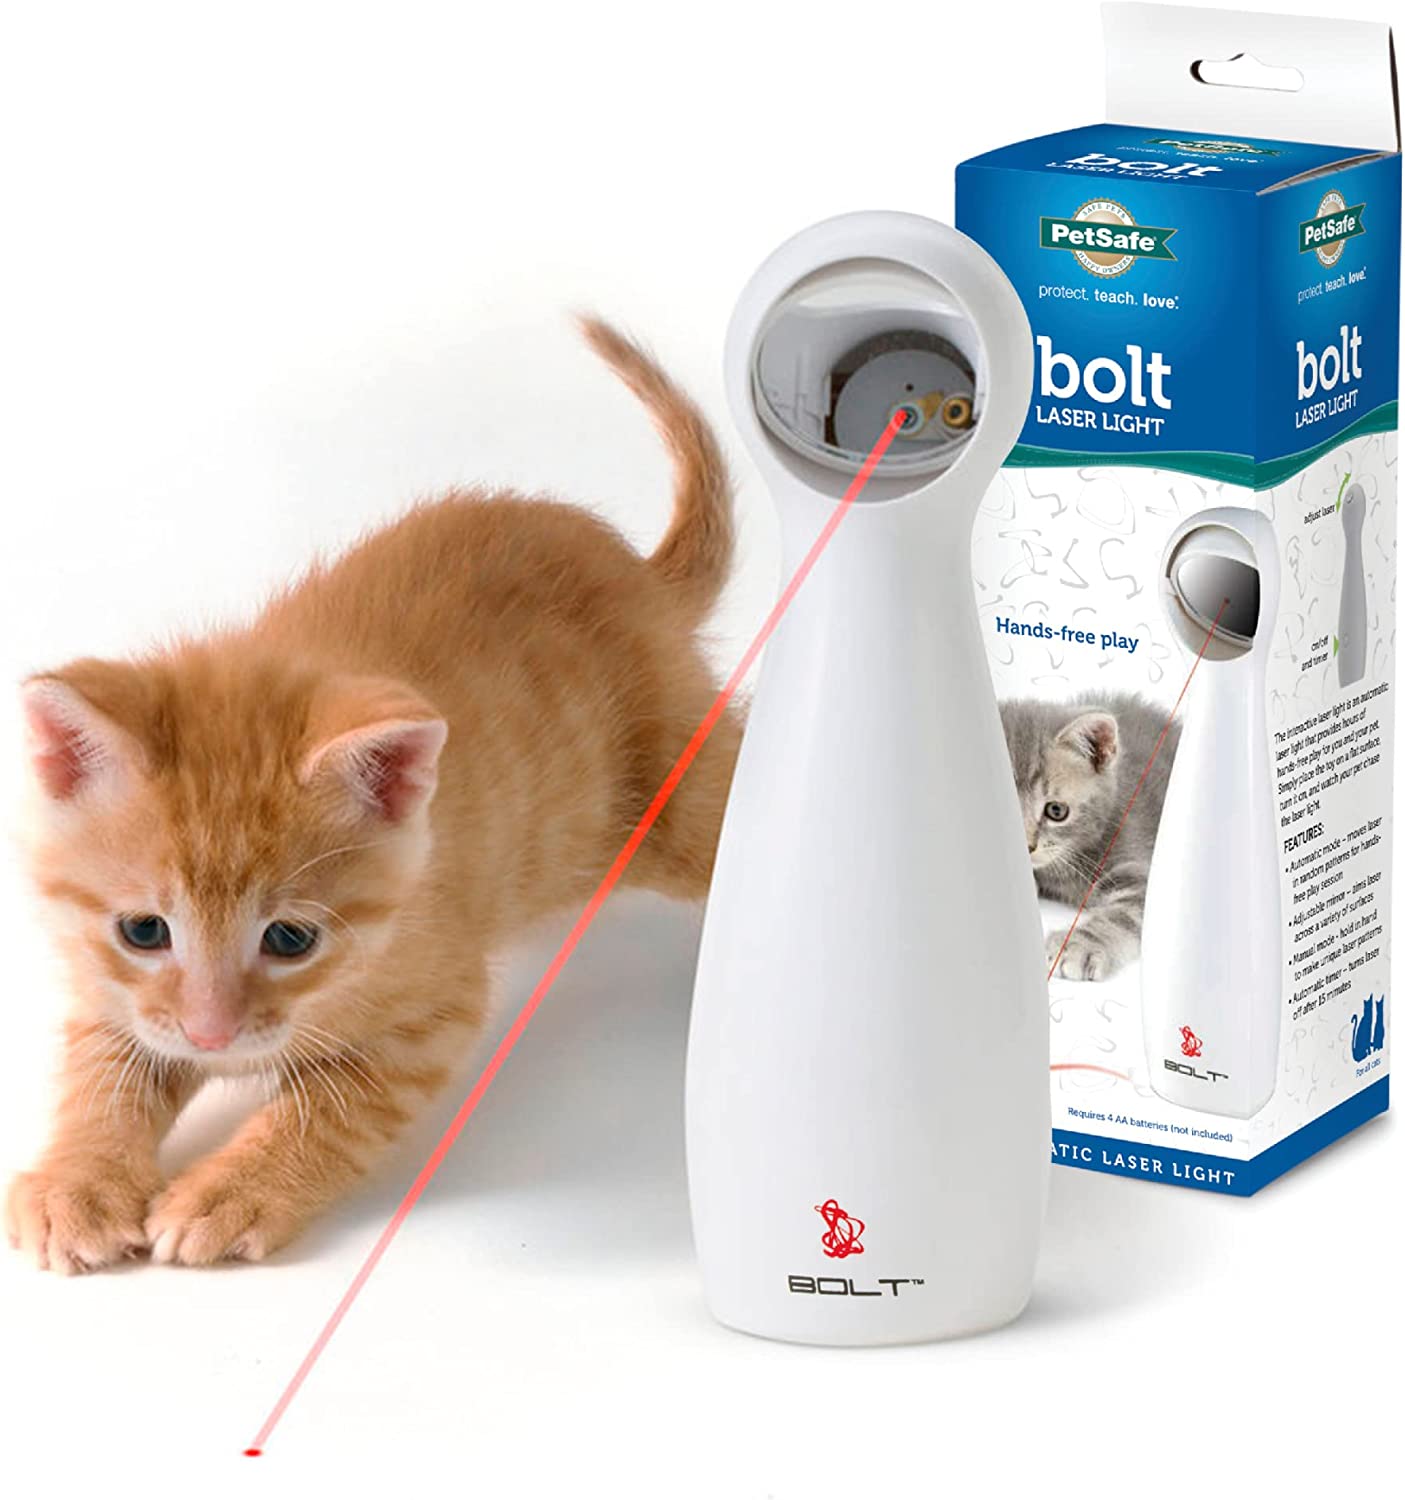 PetSafe Bolt Laser Cat Toy